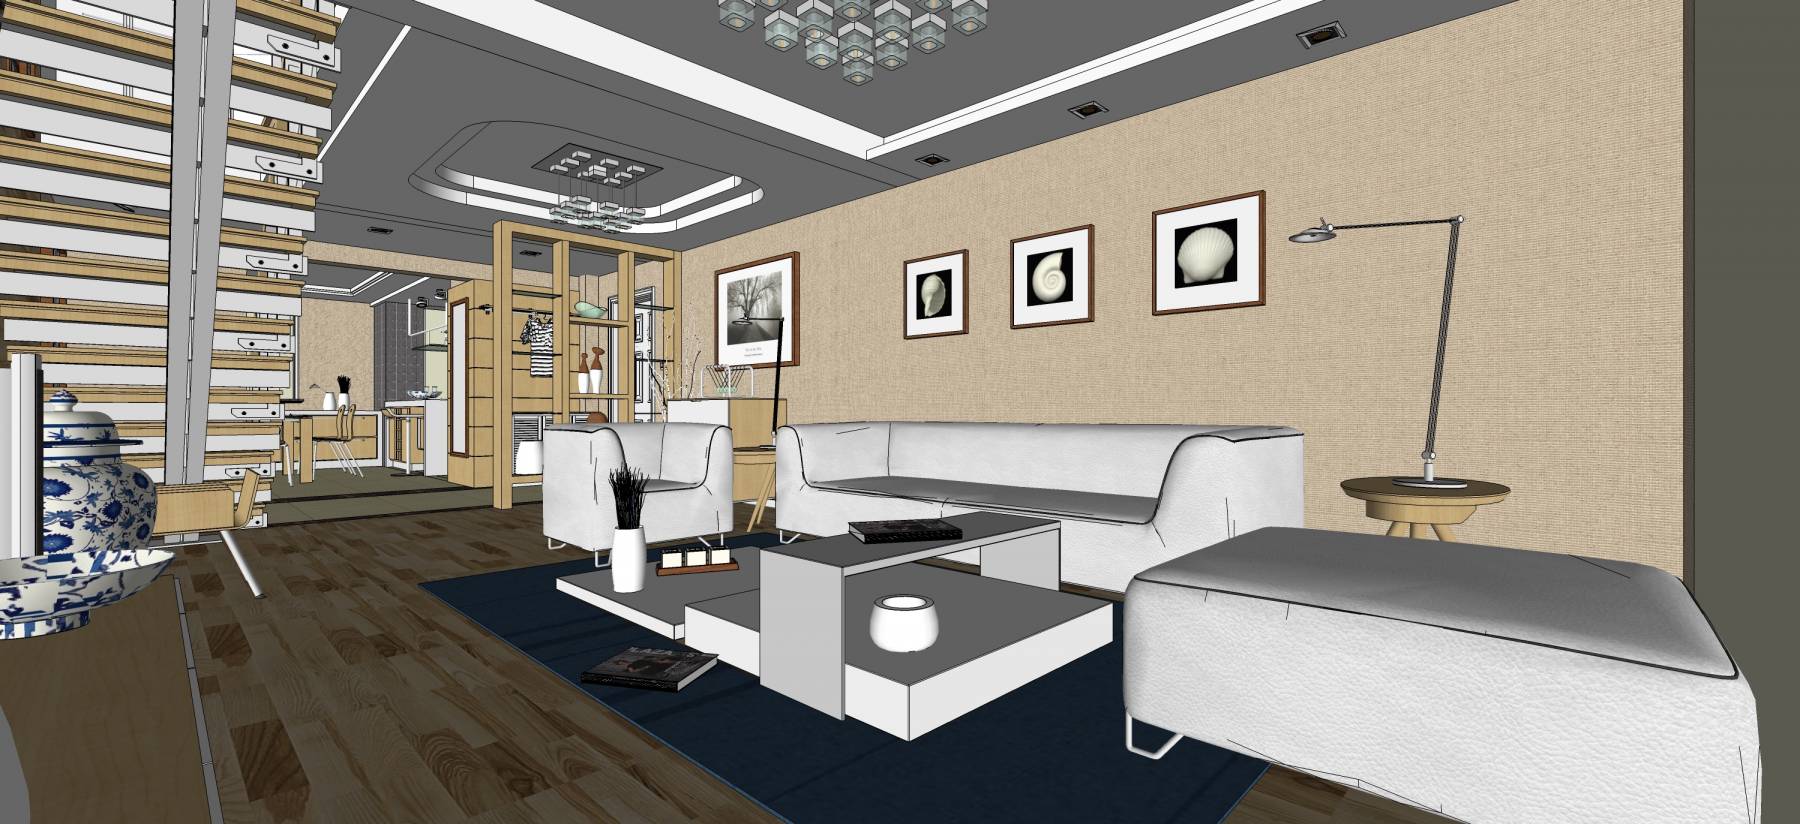 新中式客厅 -sketchup模型_sketchup模型库_建E室内设计网!